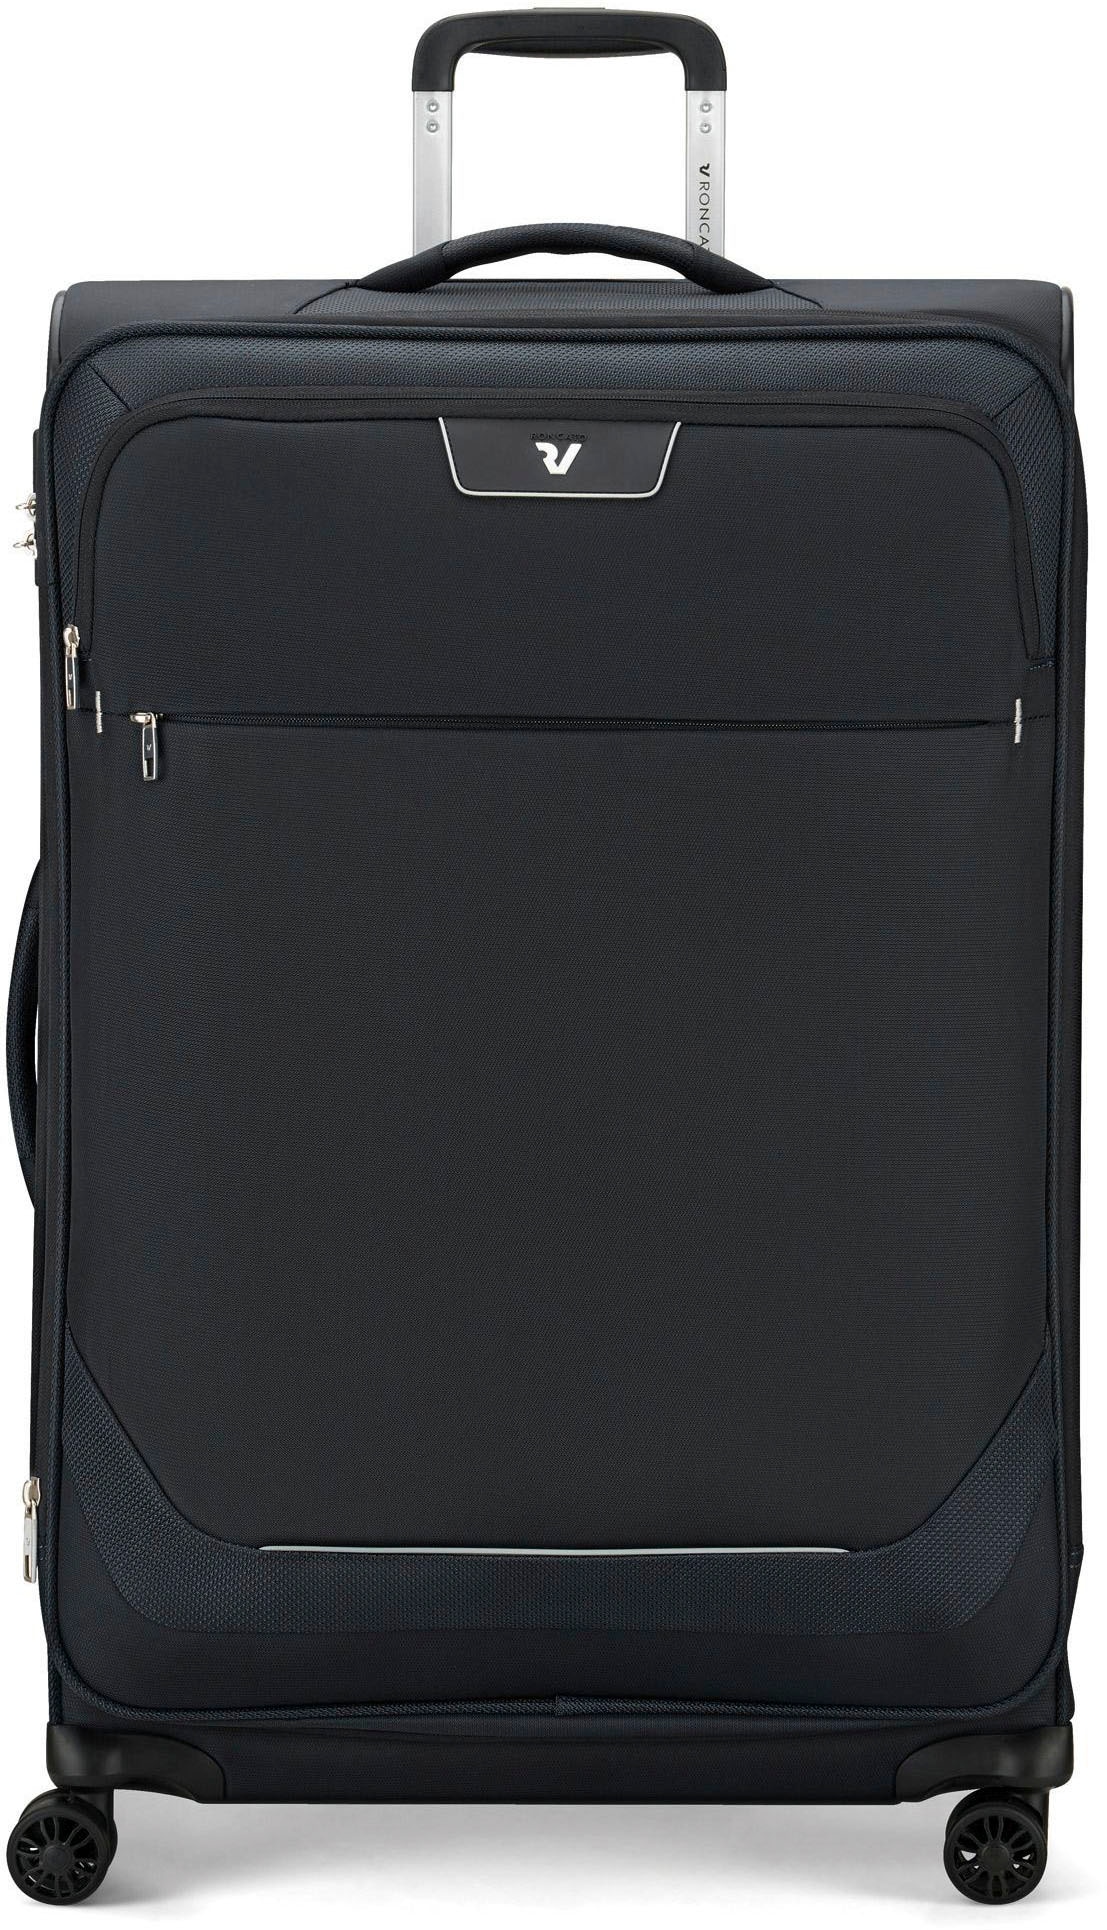 RONCATO Weichgepäck-Trolley »Joy, 75 cm, schwarz«, 4 Rollen, Weichgepäck-Koffer Reisegepäck mit Volumenerweiterung und TSA Schloss